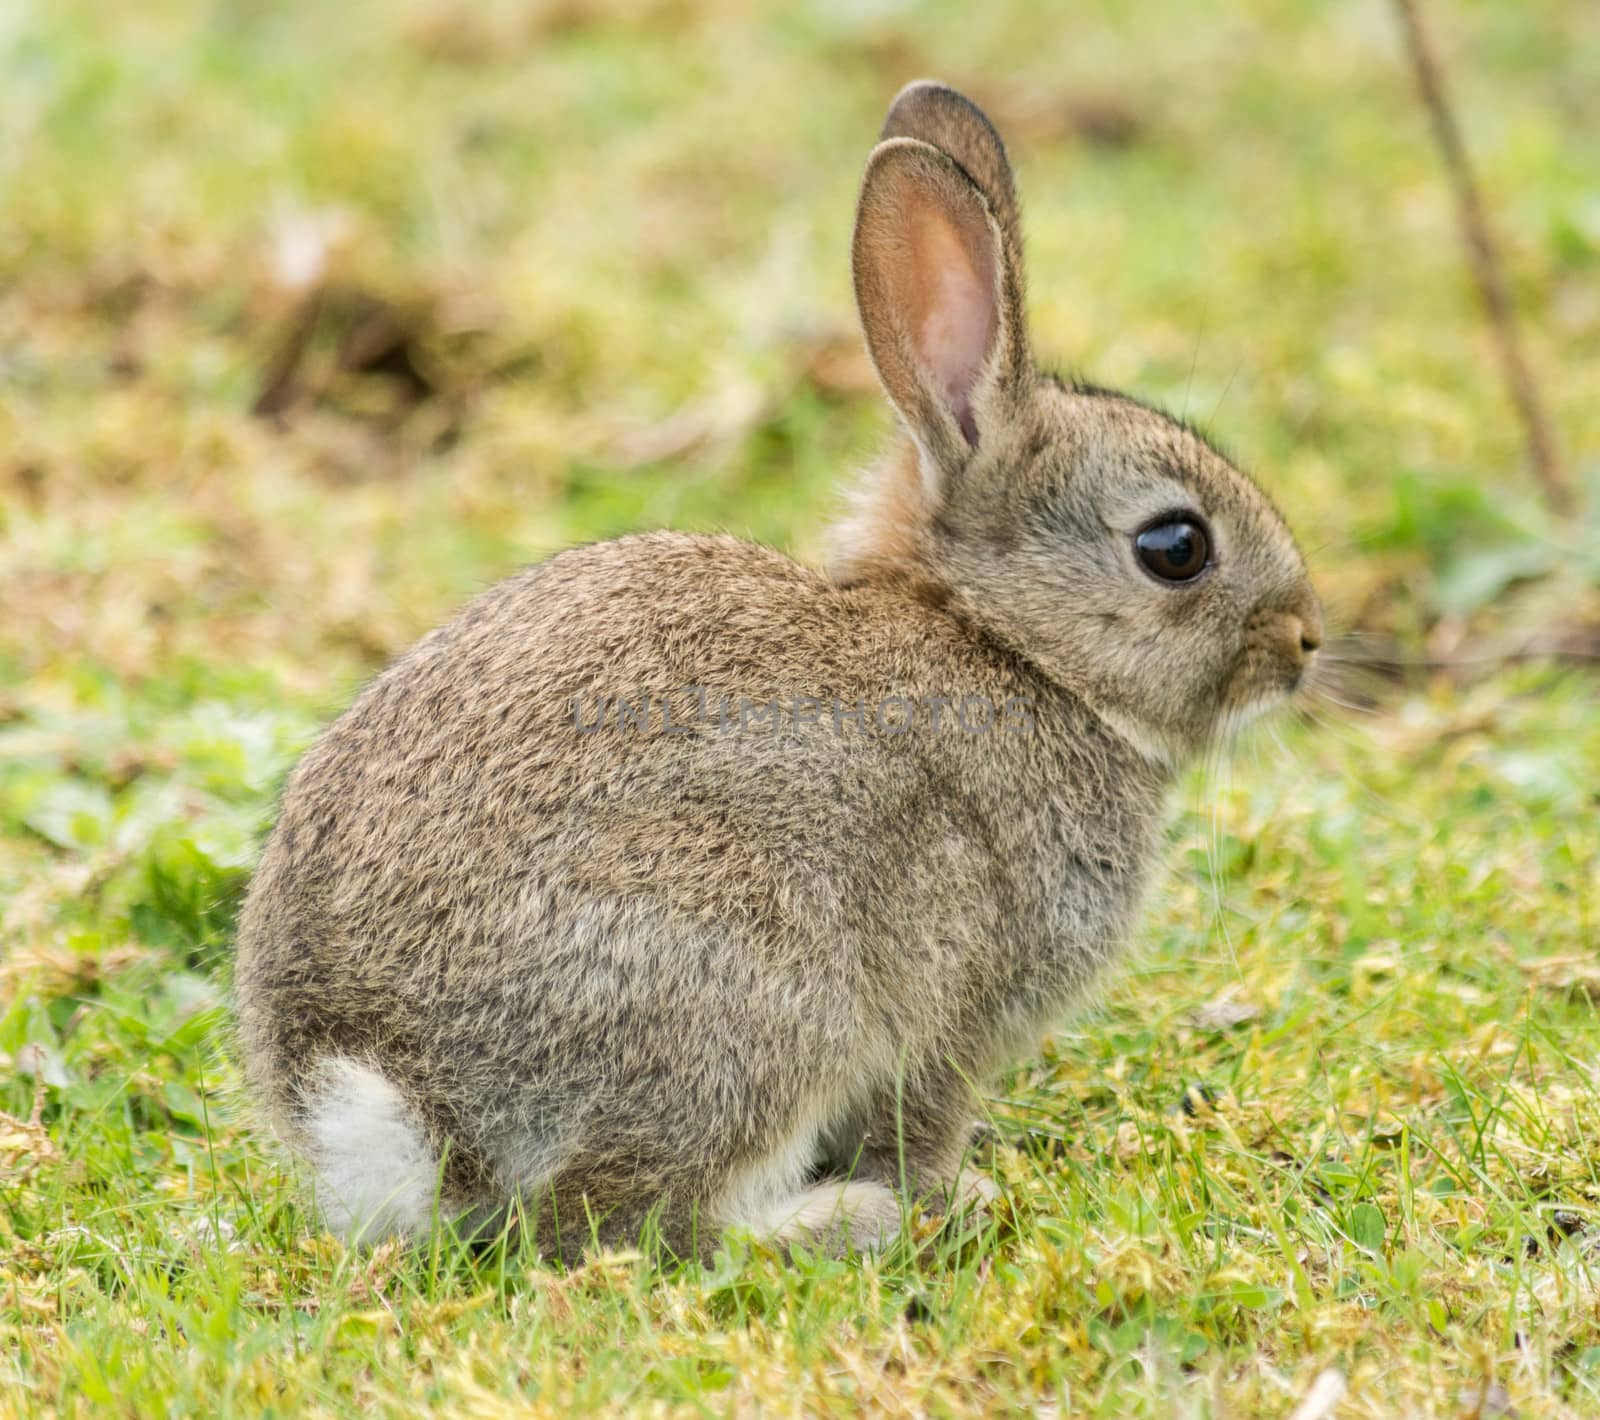 wild baby rabbit in a field